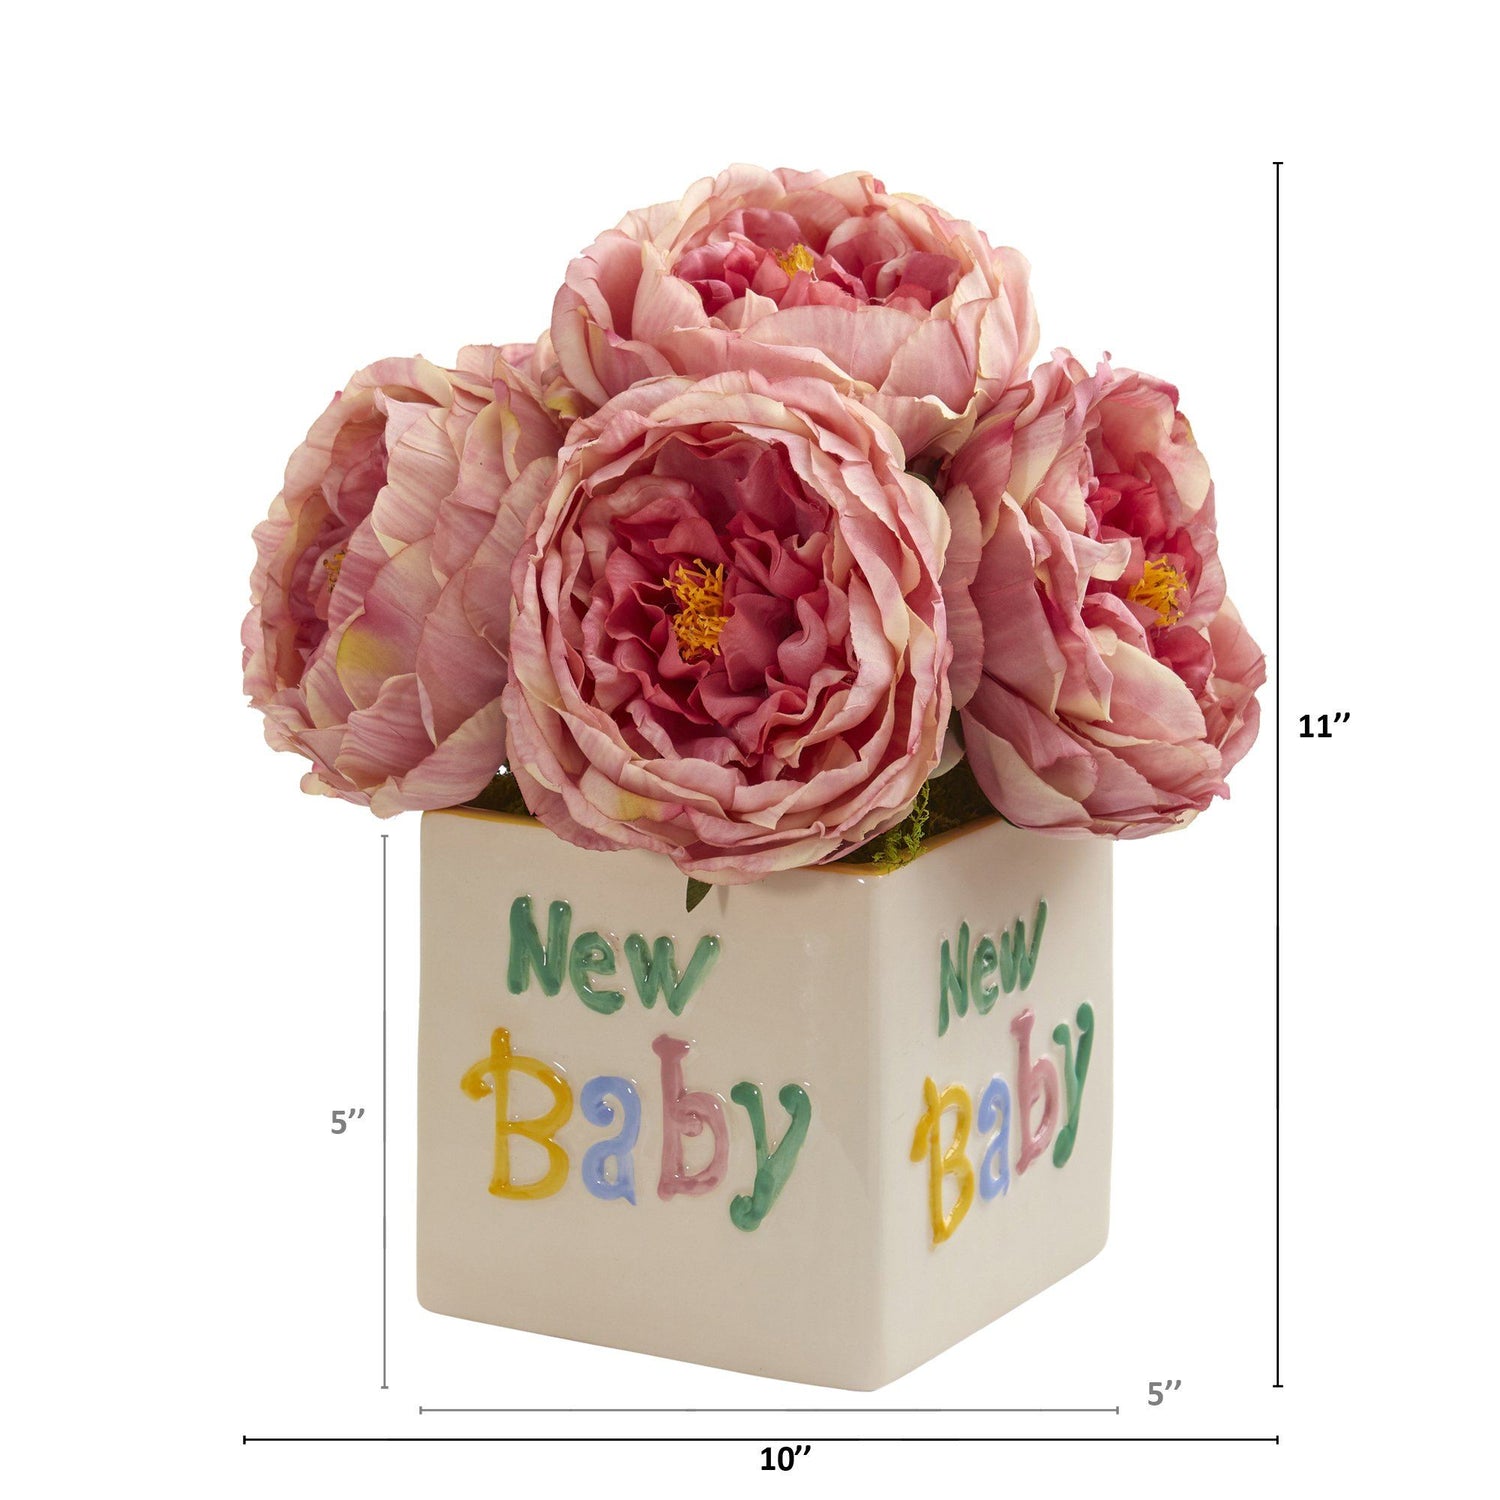 11” Rose Artificial Arrangement in “New Baby” Vase